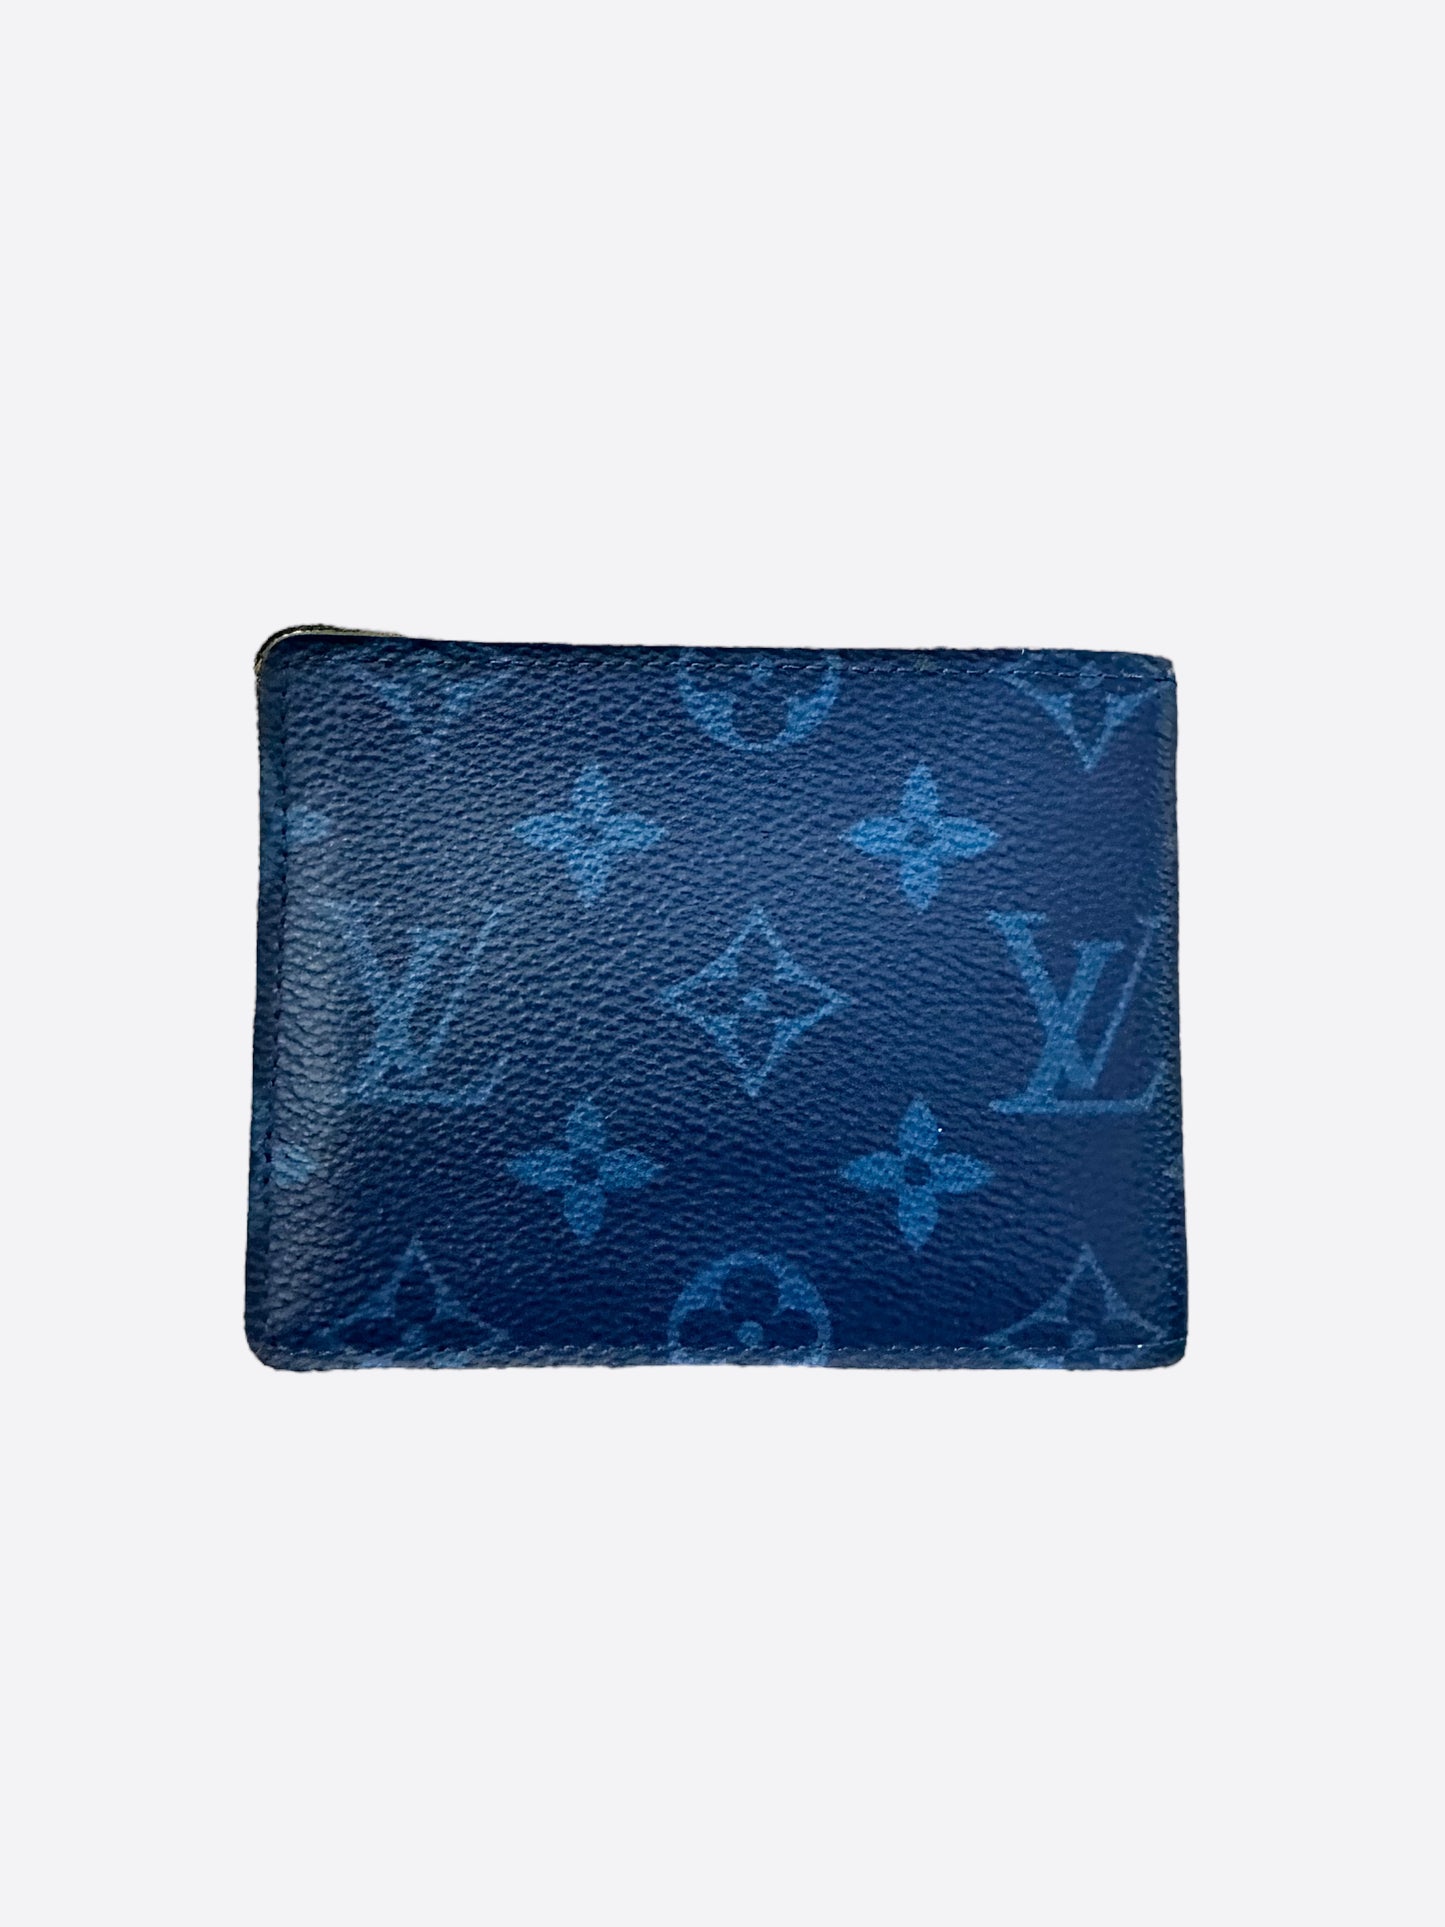 Louis Vuitton Smart Wallet Bleu Marine – Pursekelly – high quality